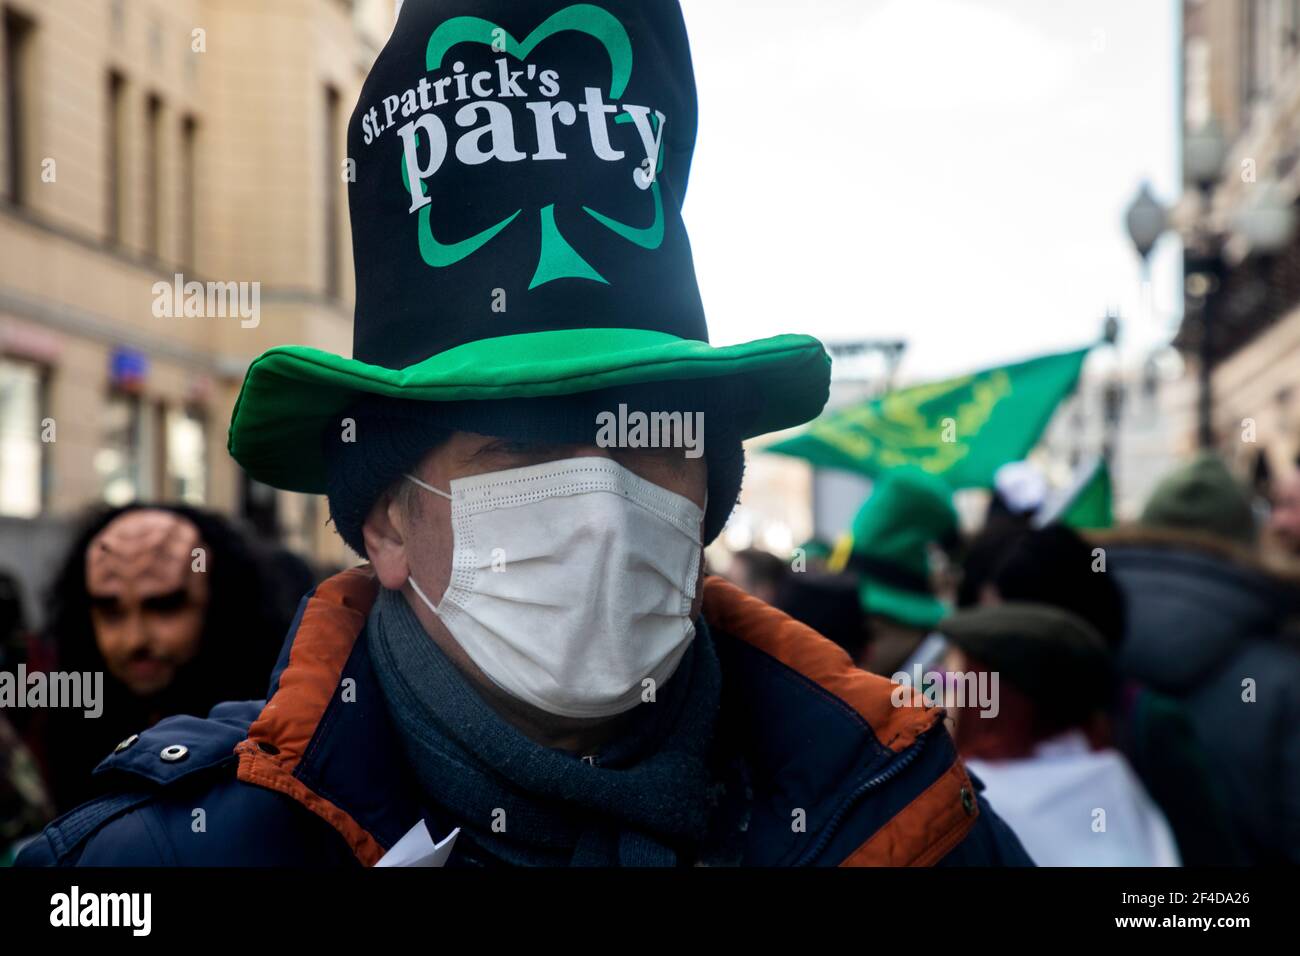 Moscou, Russie. 20 mars 2021. Les participants portant un masque facial lors de la parade de la Saint-Patrick qui s'est tenue dans la rue Arbat, au centre de Moscou, pendant la pandémie du coronavirus COVID-19 en Russie Banque D'Images